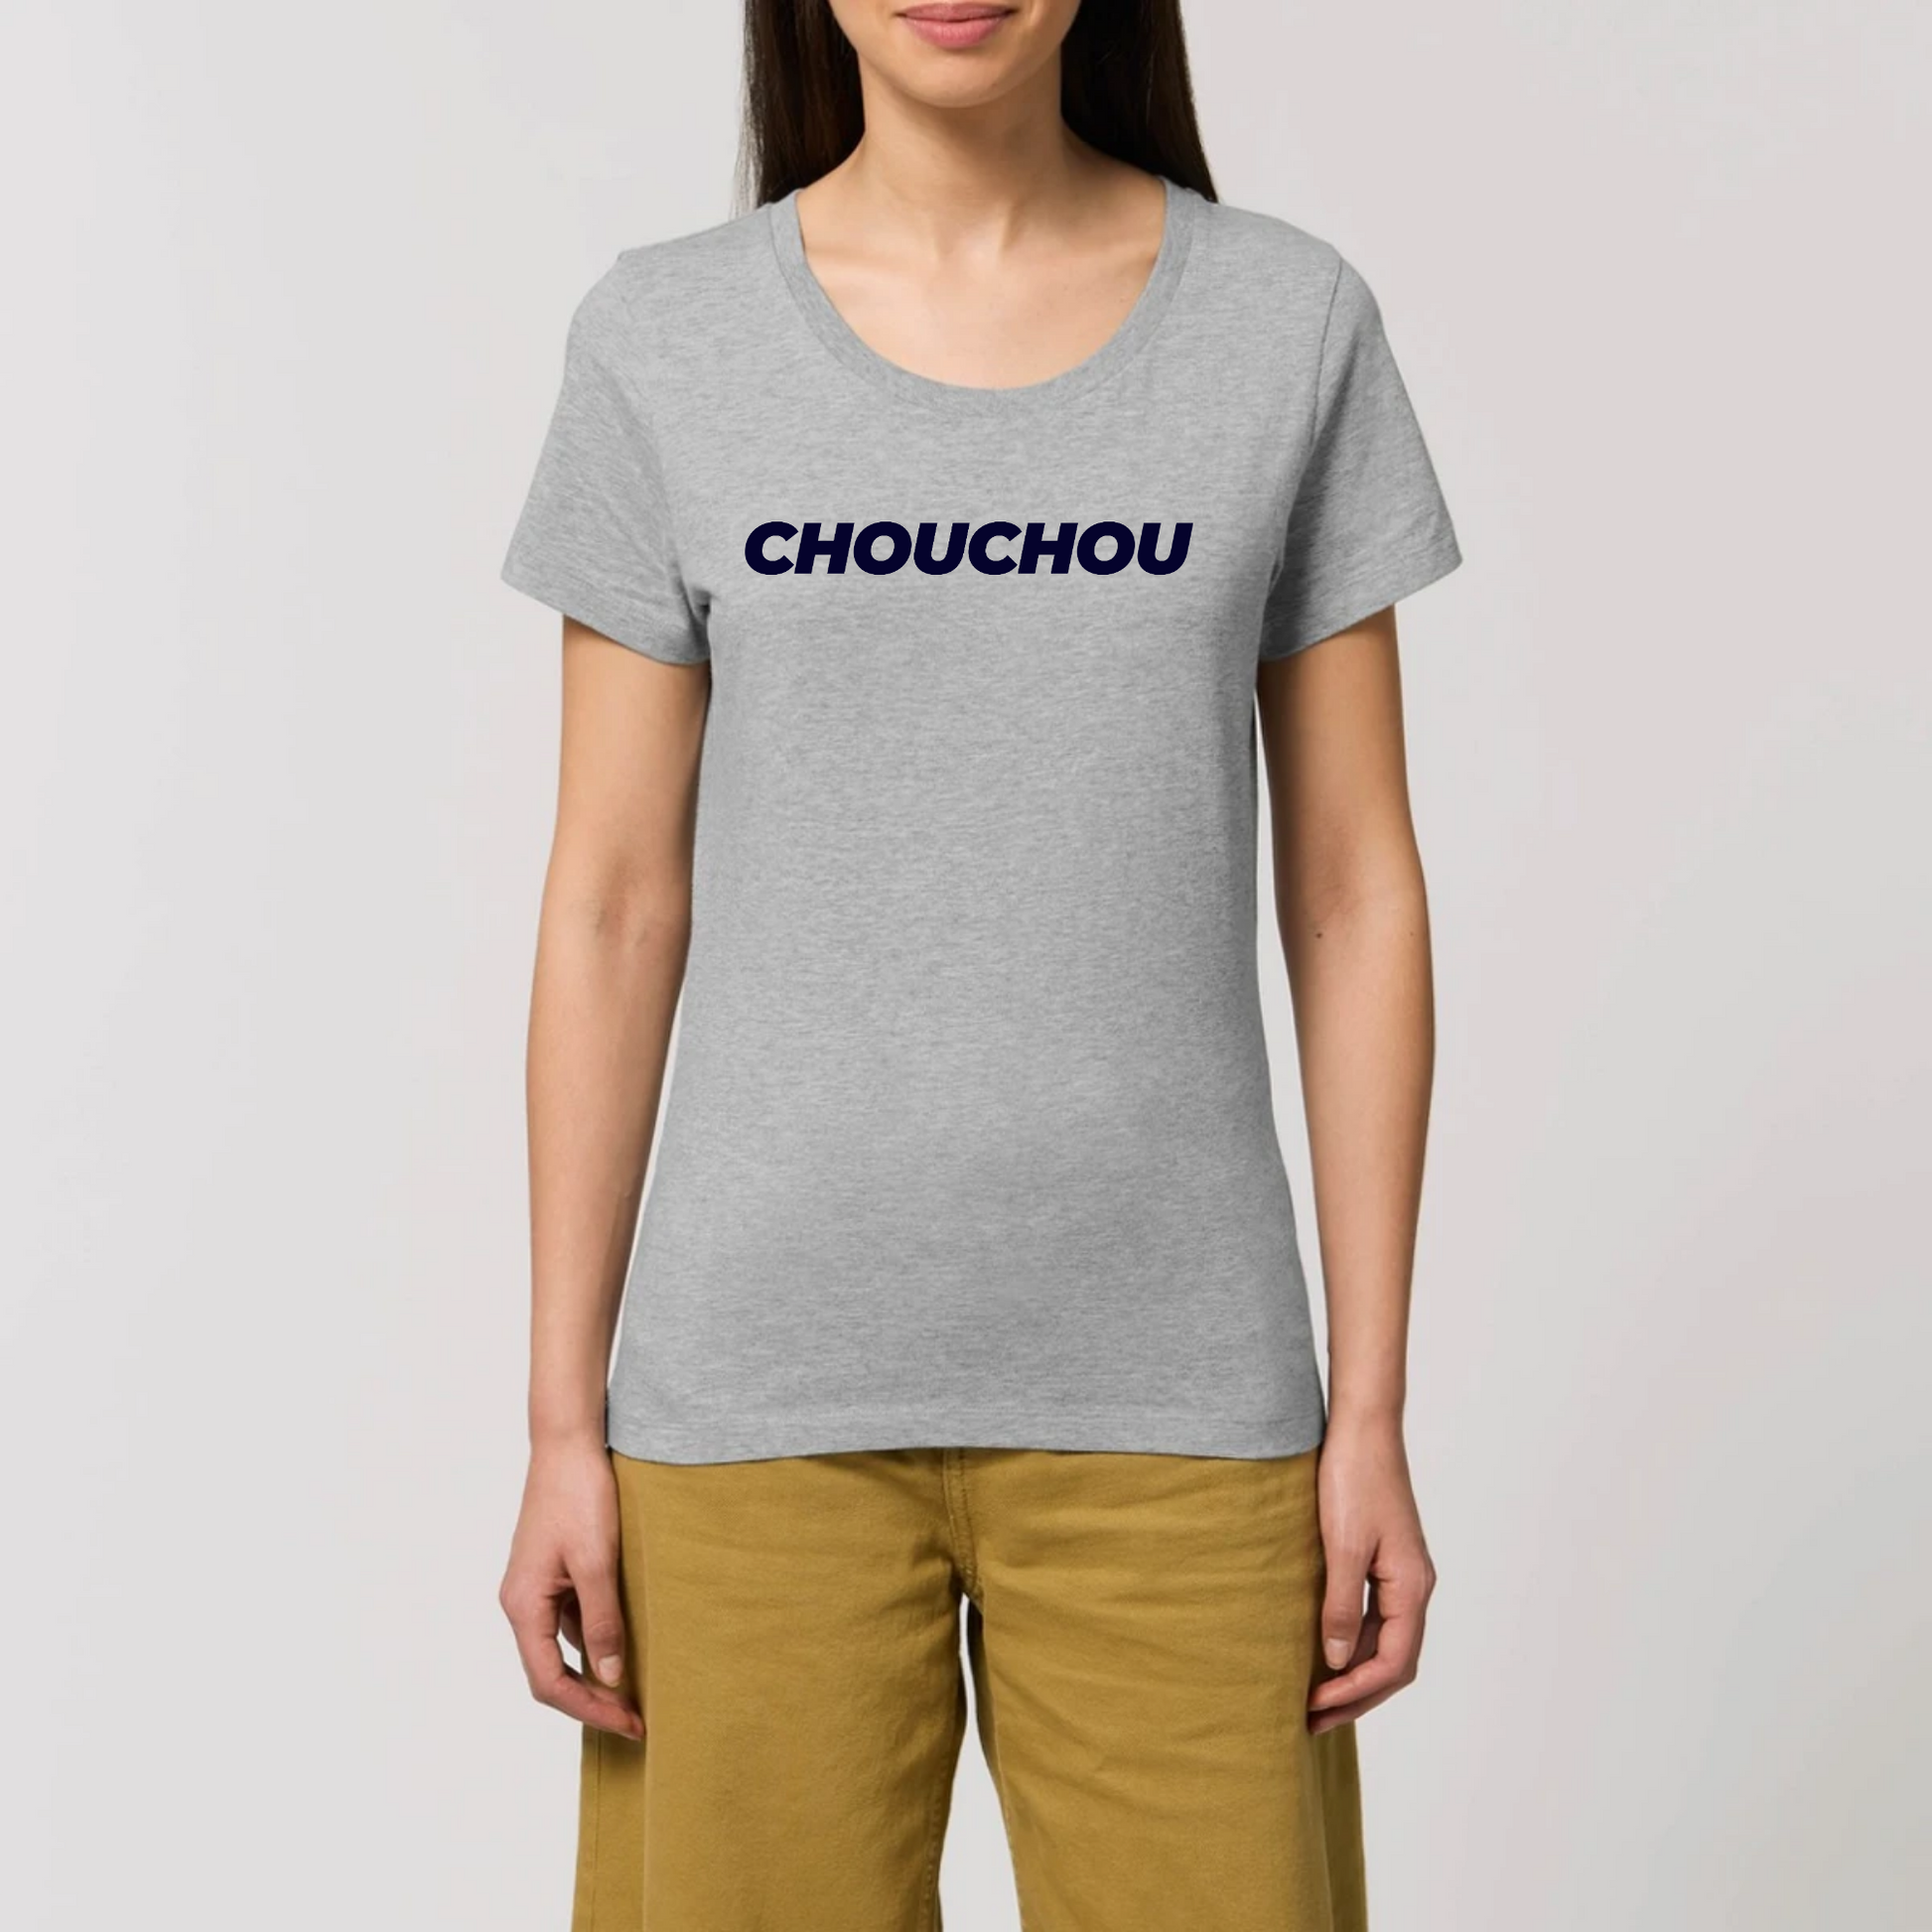 t-shirt chouchou femme T-French, coton bio, manches courtes, coupe ajustée, surnom, saint valentin, amour, Gris